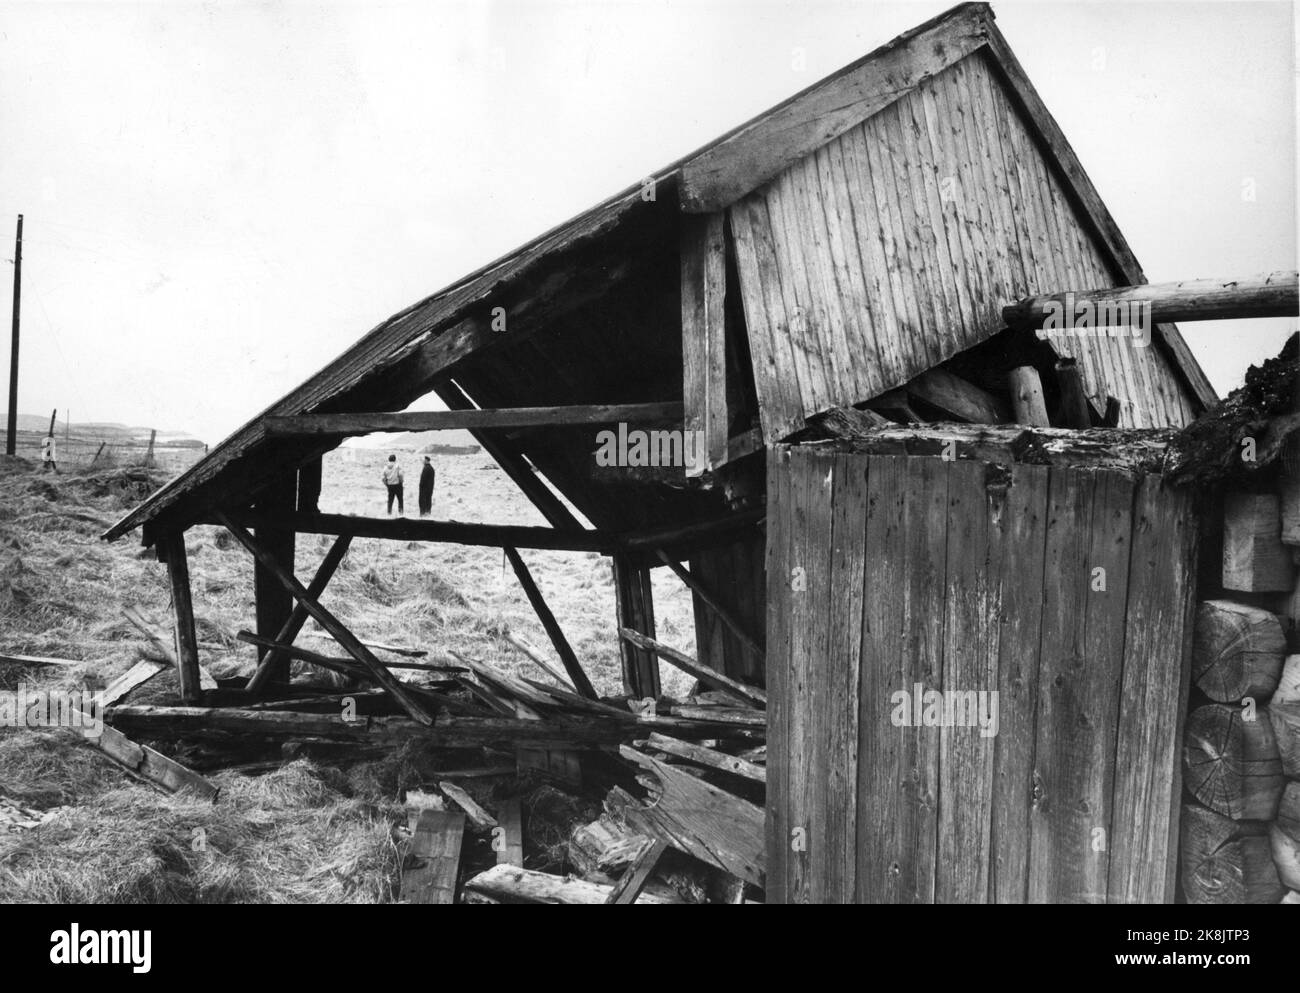 1964. Spostamento. Hjelmsøy nel comune di Herøy. Le case sono lasciate e decadono dopo che i residenti si sono spostati dal sito. Implementazione / spopolamento edifici distrutti. Foto: Sverre A. Børretzen / corrente / NTB Foto Stock